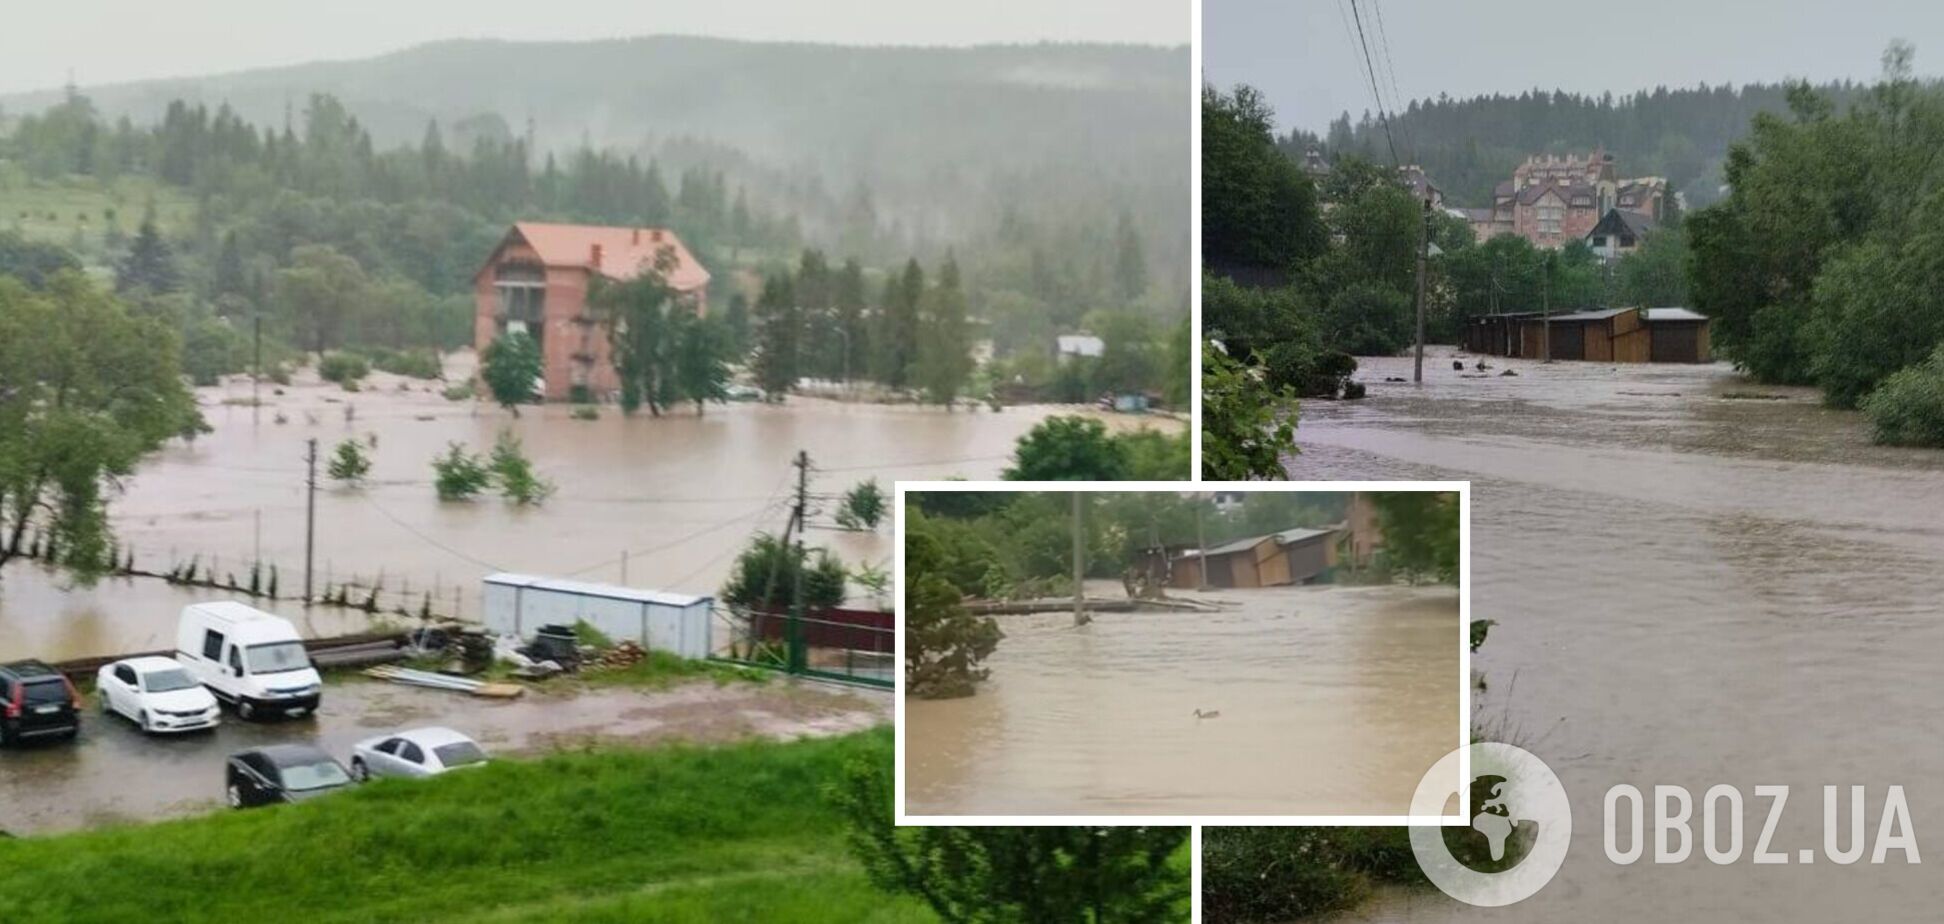 Жахливий паводок на Львівщині: річка вийшла з берегів і затопила населений пункт. Відео